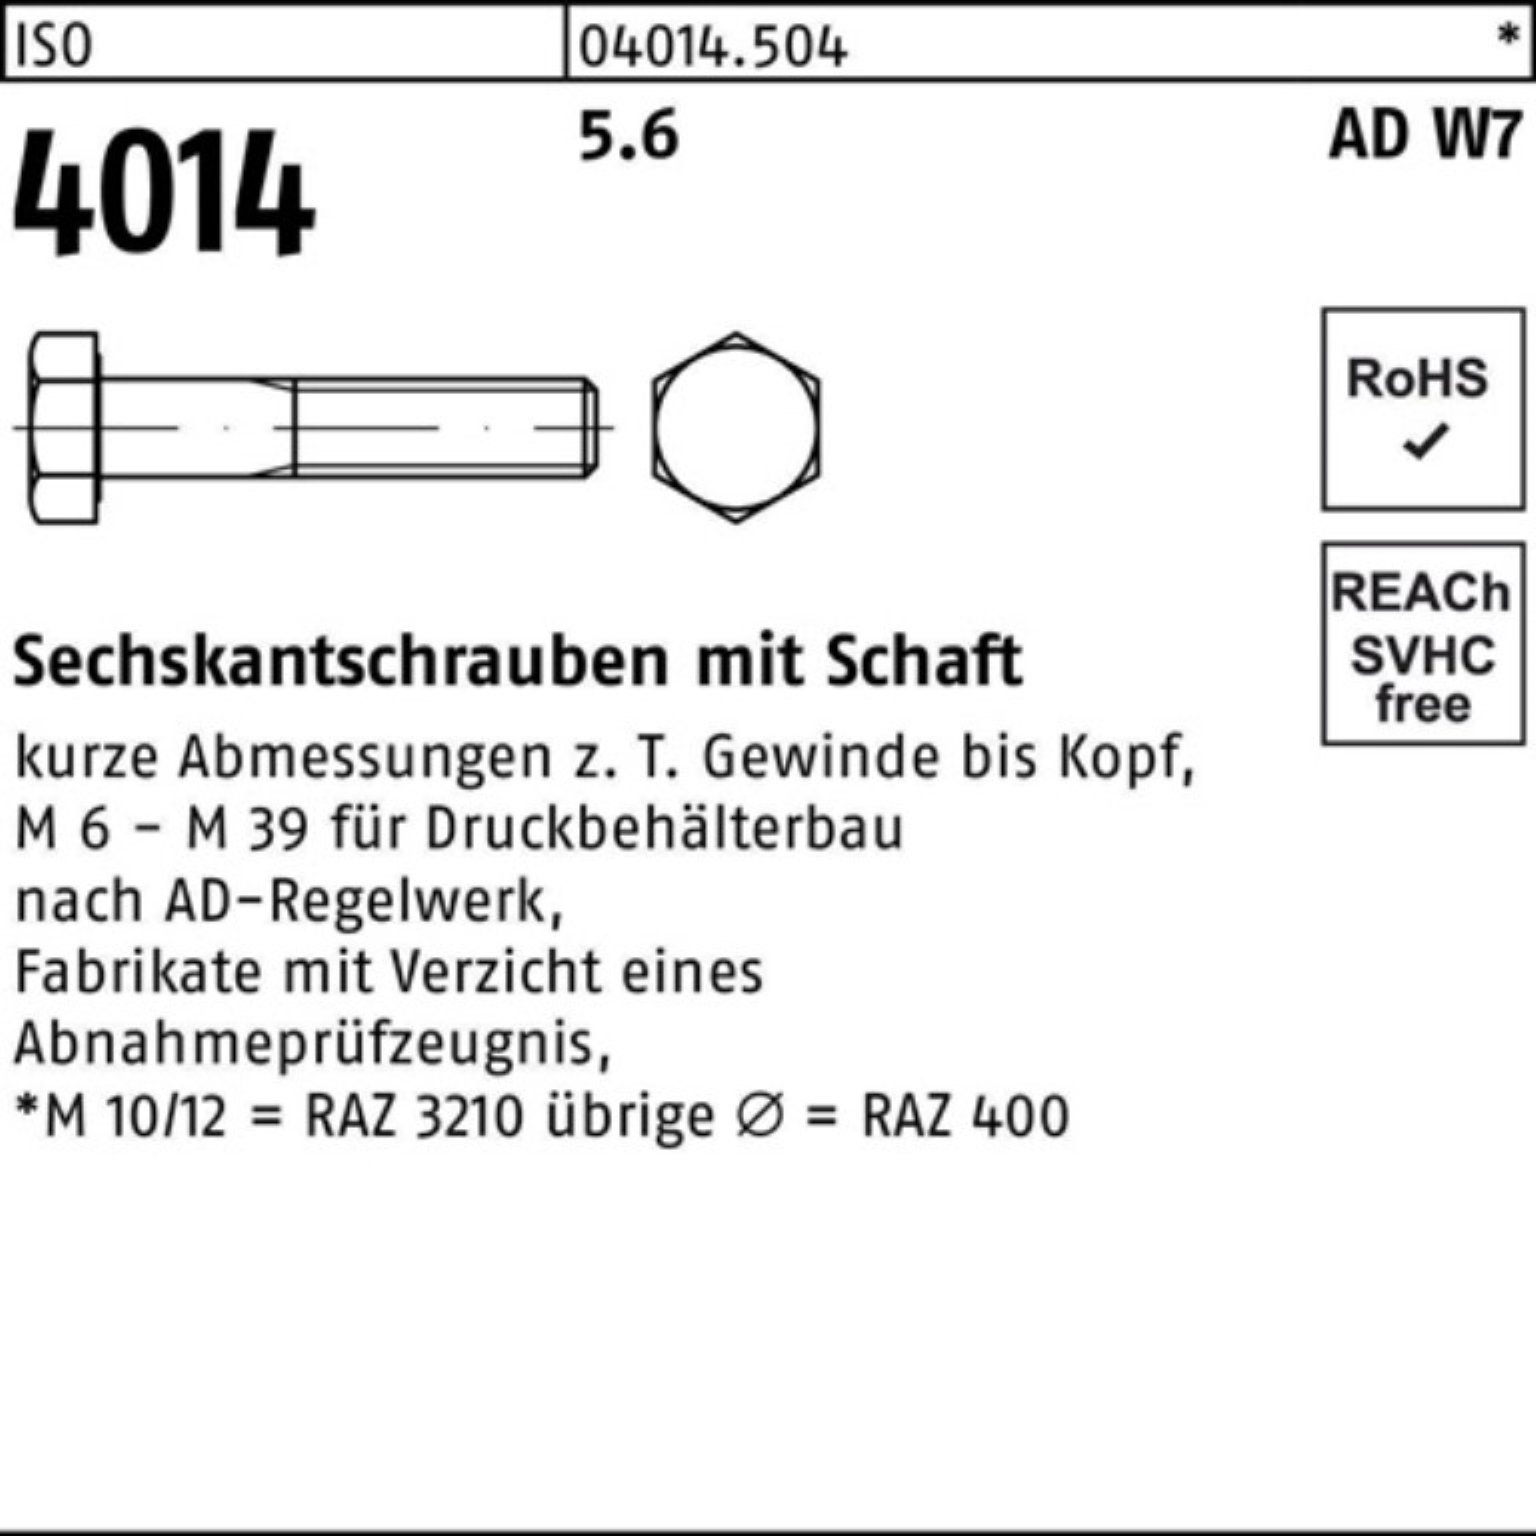 Bufab Sechskantschraube 100er 4014 W7 Schaft ISO Pack Stück Sechskantschraube 150 5.6 1 M39x